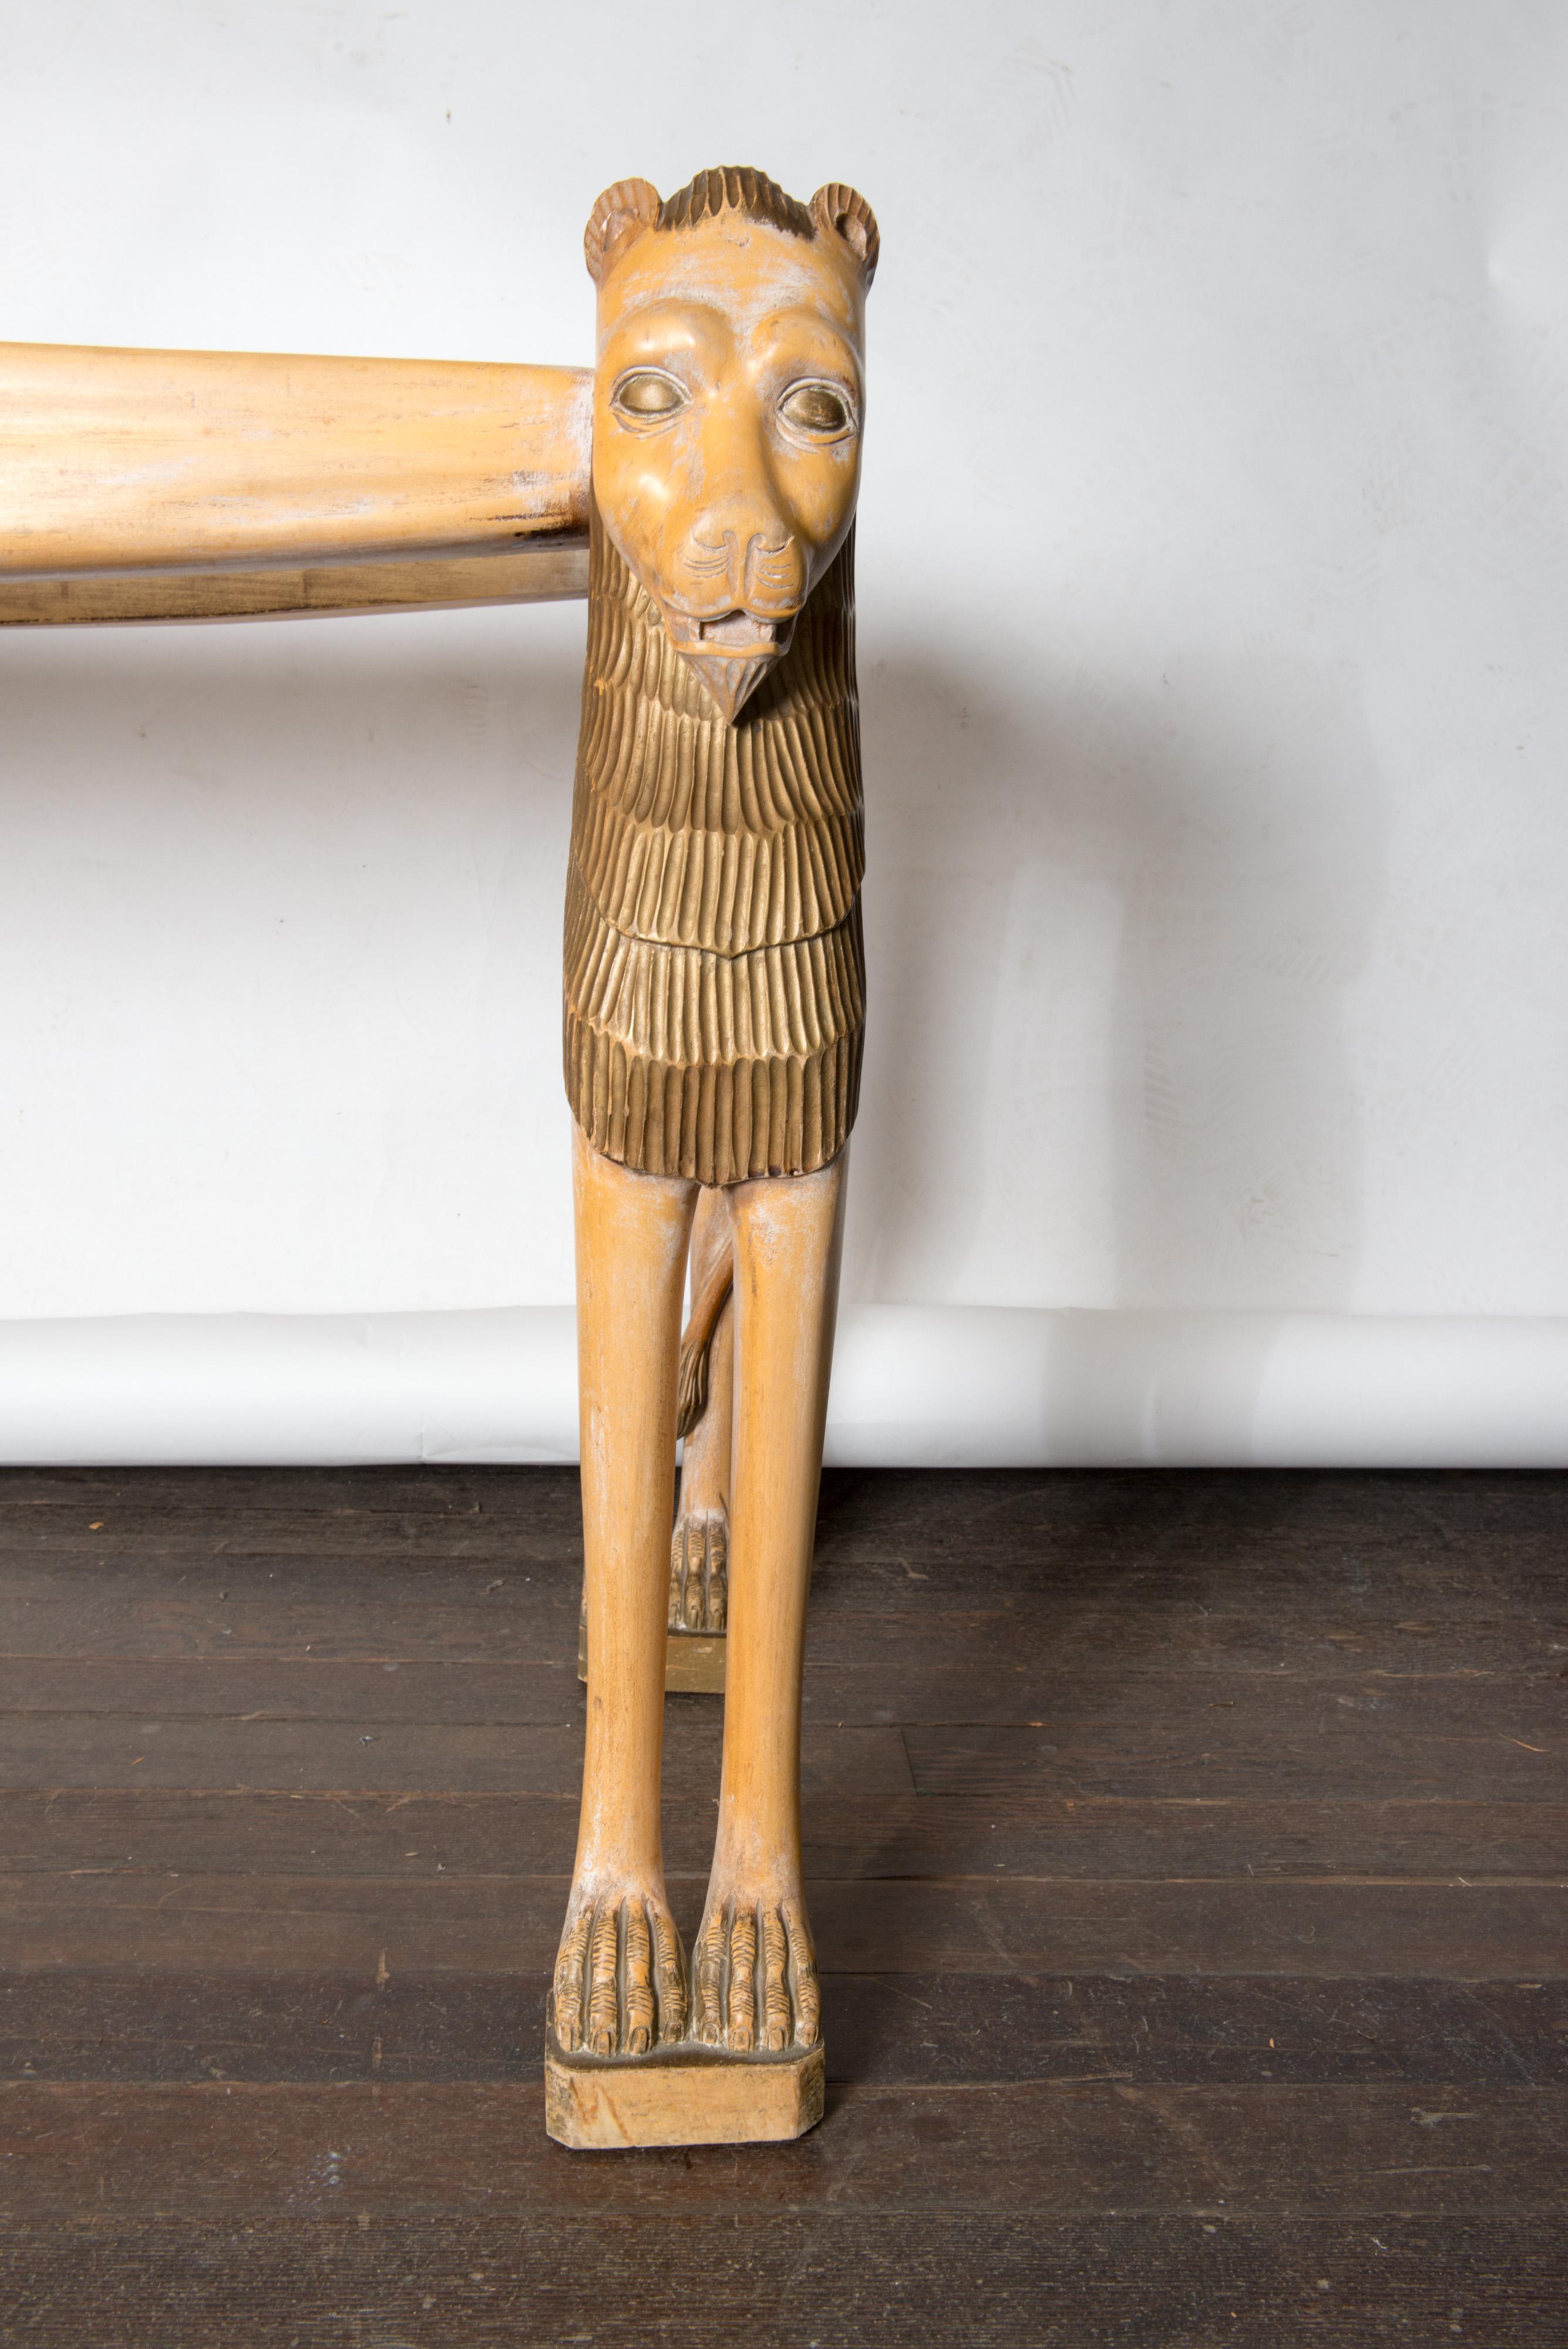 ägyptischer Löwen-Konsolentisch aus geschnitztem Holz aus den 1960er-Jahren mit eingelassener Glasplatte. Schön geschnitzt detaillierten Löwen Gesicht und Mähne, Schwanz und Zehen.